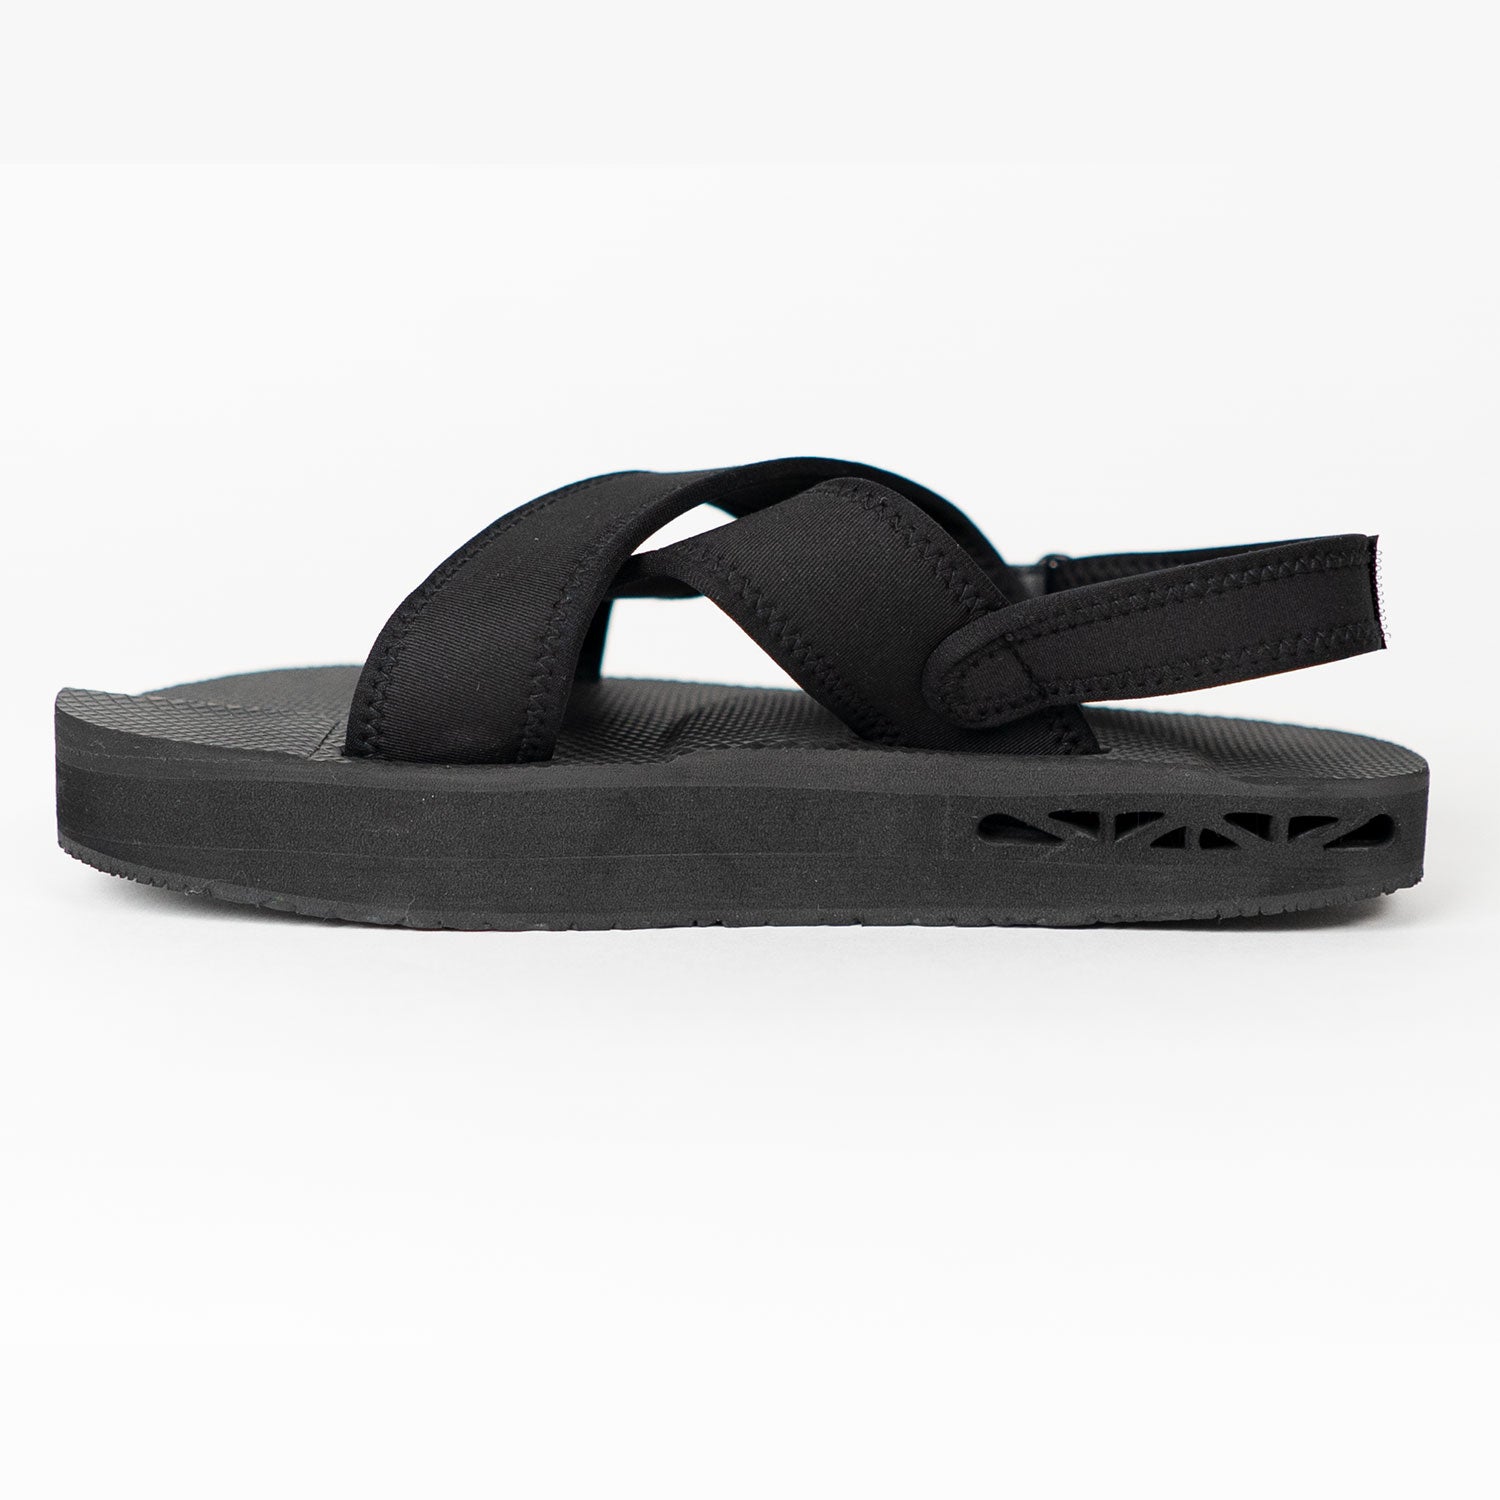 Vero Moda chunky platform flip flops in black